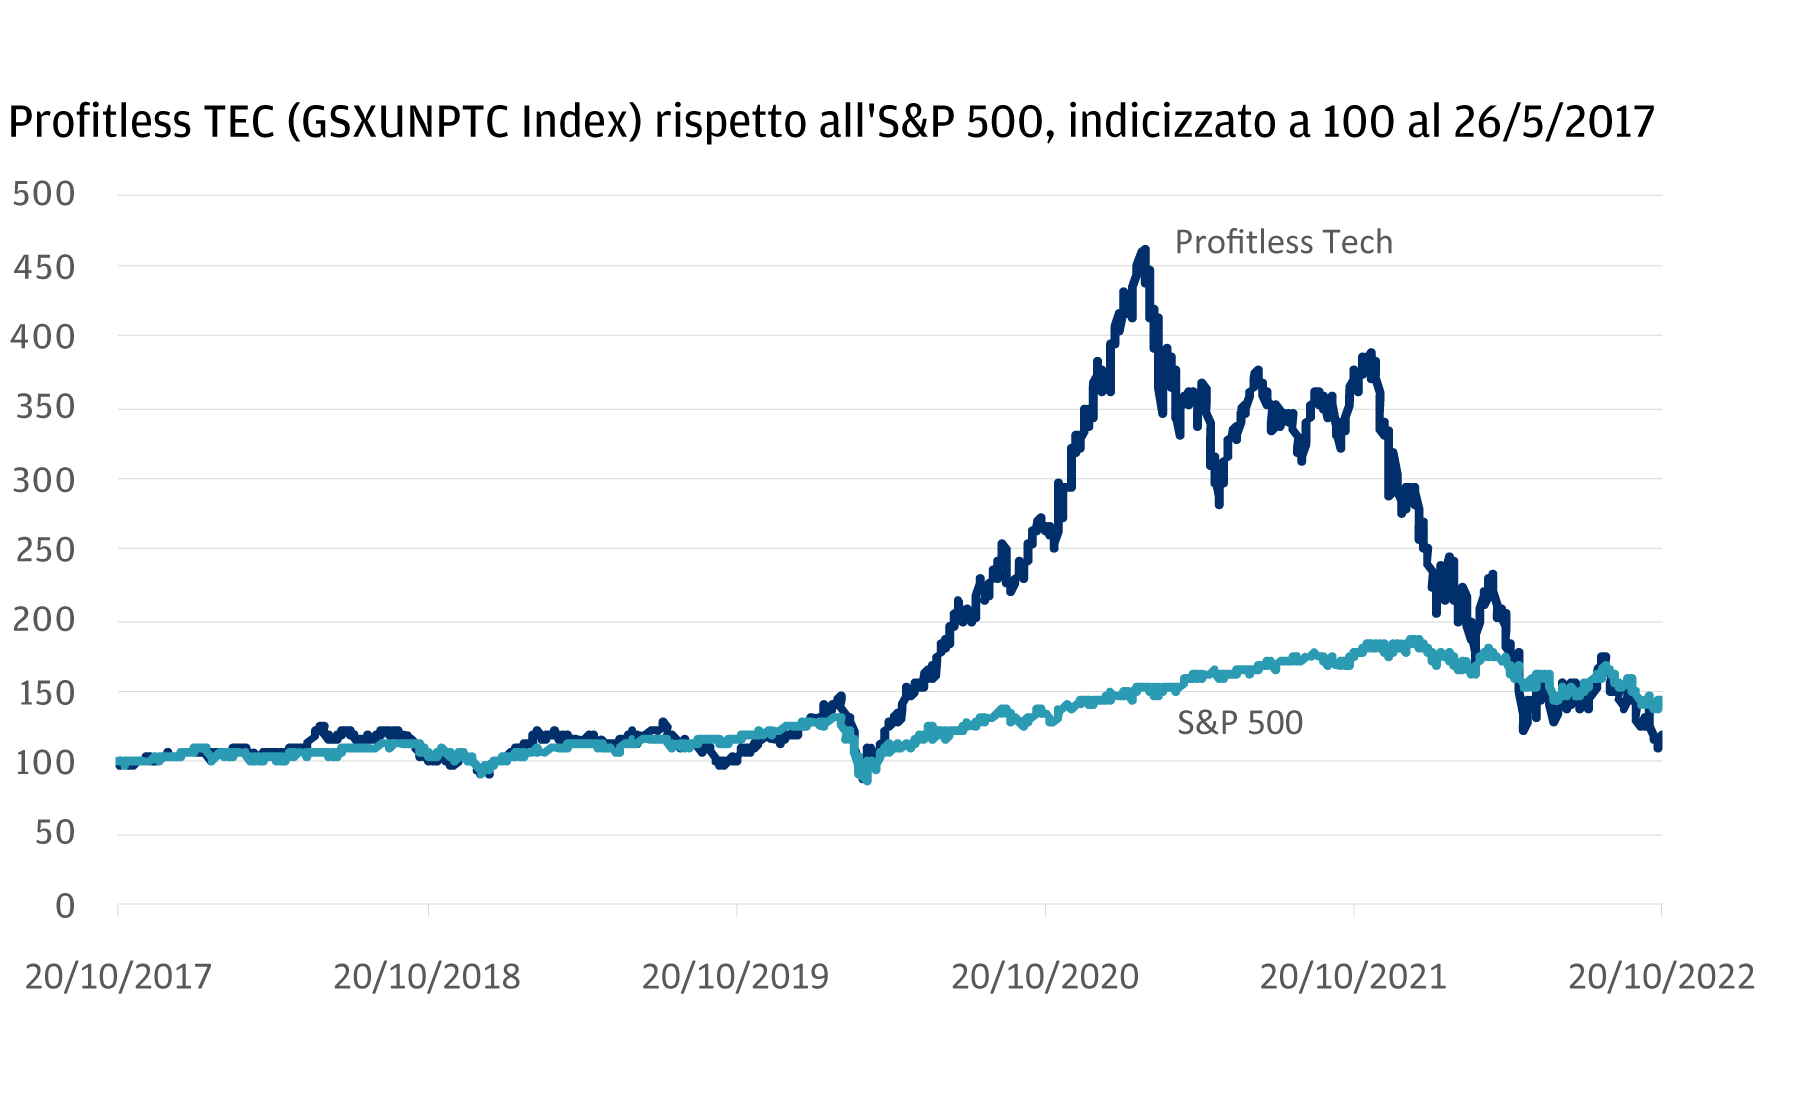 Il grafico mostra la performance del Profitless Tech Index rispetto all'S&P 500 nel periodo dal 2017 al 2022. I due indici si sono mossi all'unisono dal 2017 al 2020, fino all'inizio della pandemia; successivamente, il Profitless Tech Index ha registrato una crescita significativa, per poi tornare a una performance in linea con l'andamento dell'S&P nel 2022.